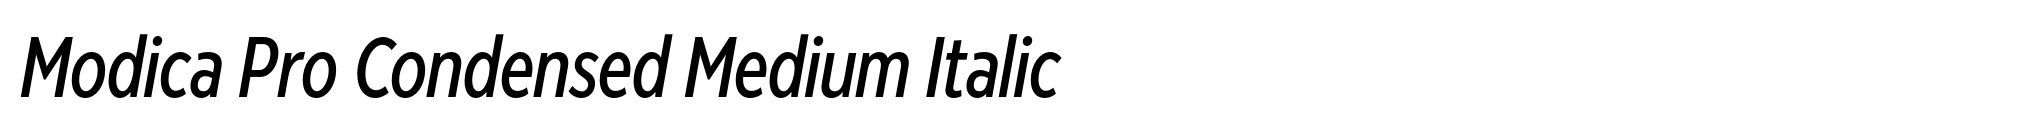 Modica Pro Condensed Medium Italic image